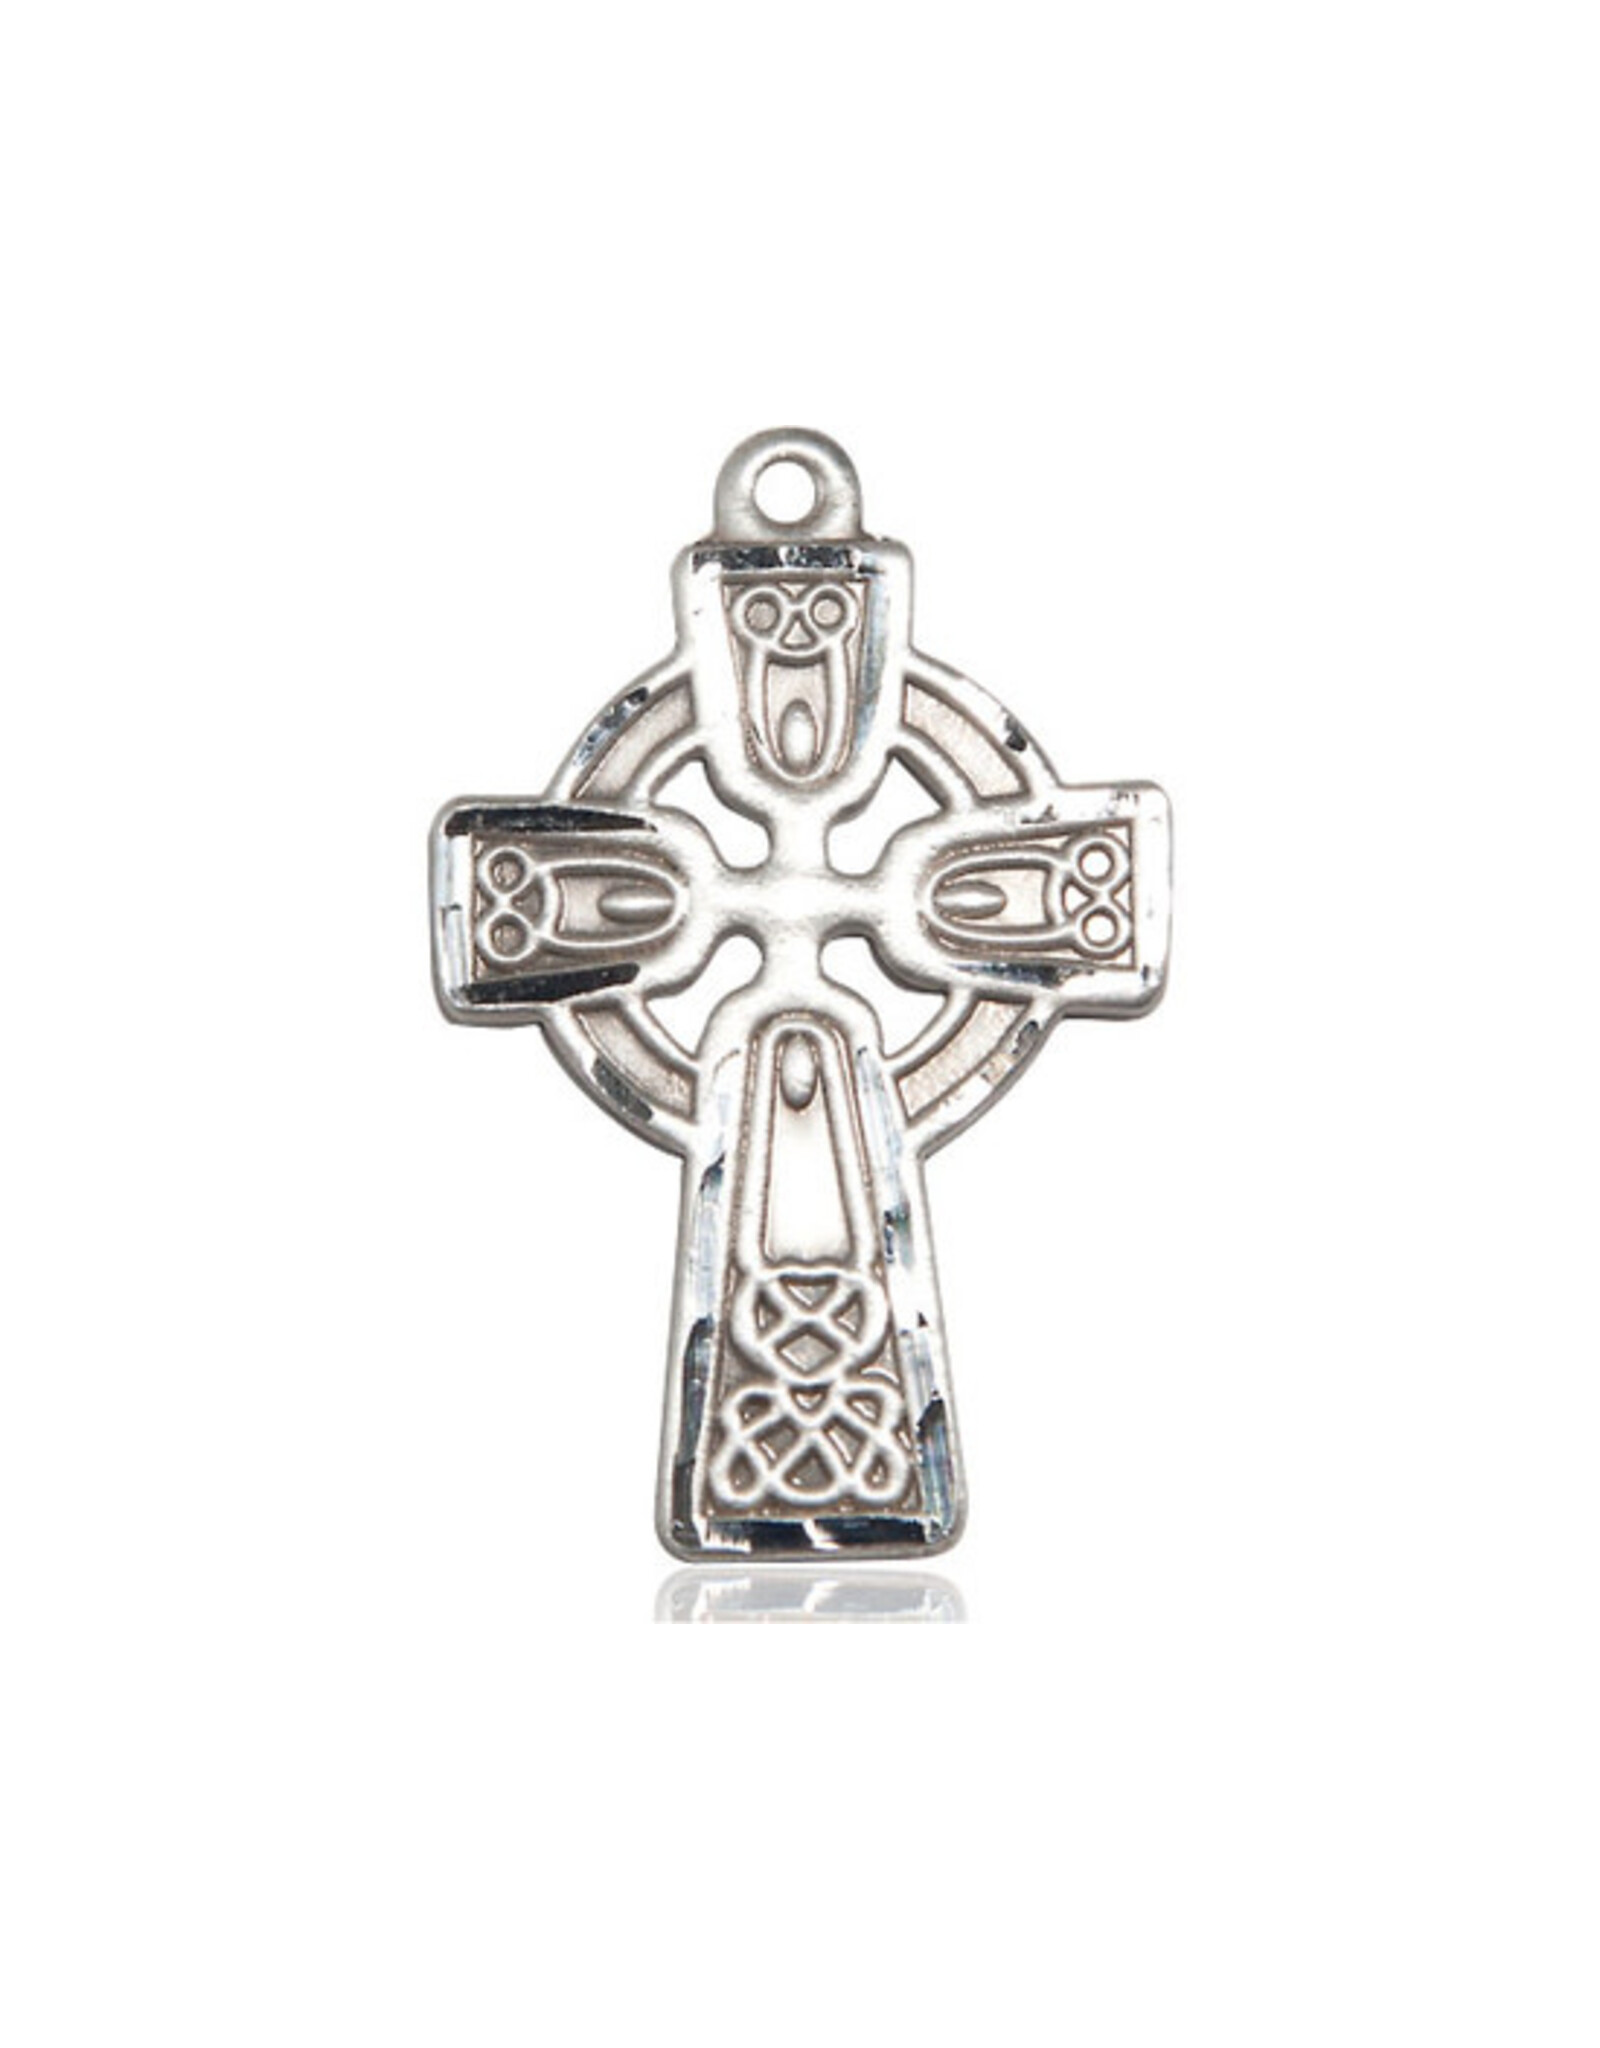 Bliss Medal - Celtic Cross, Sterling Silver